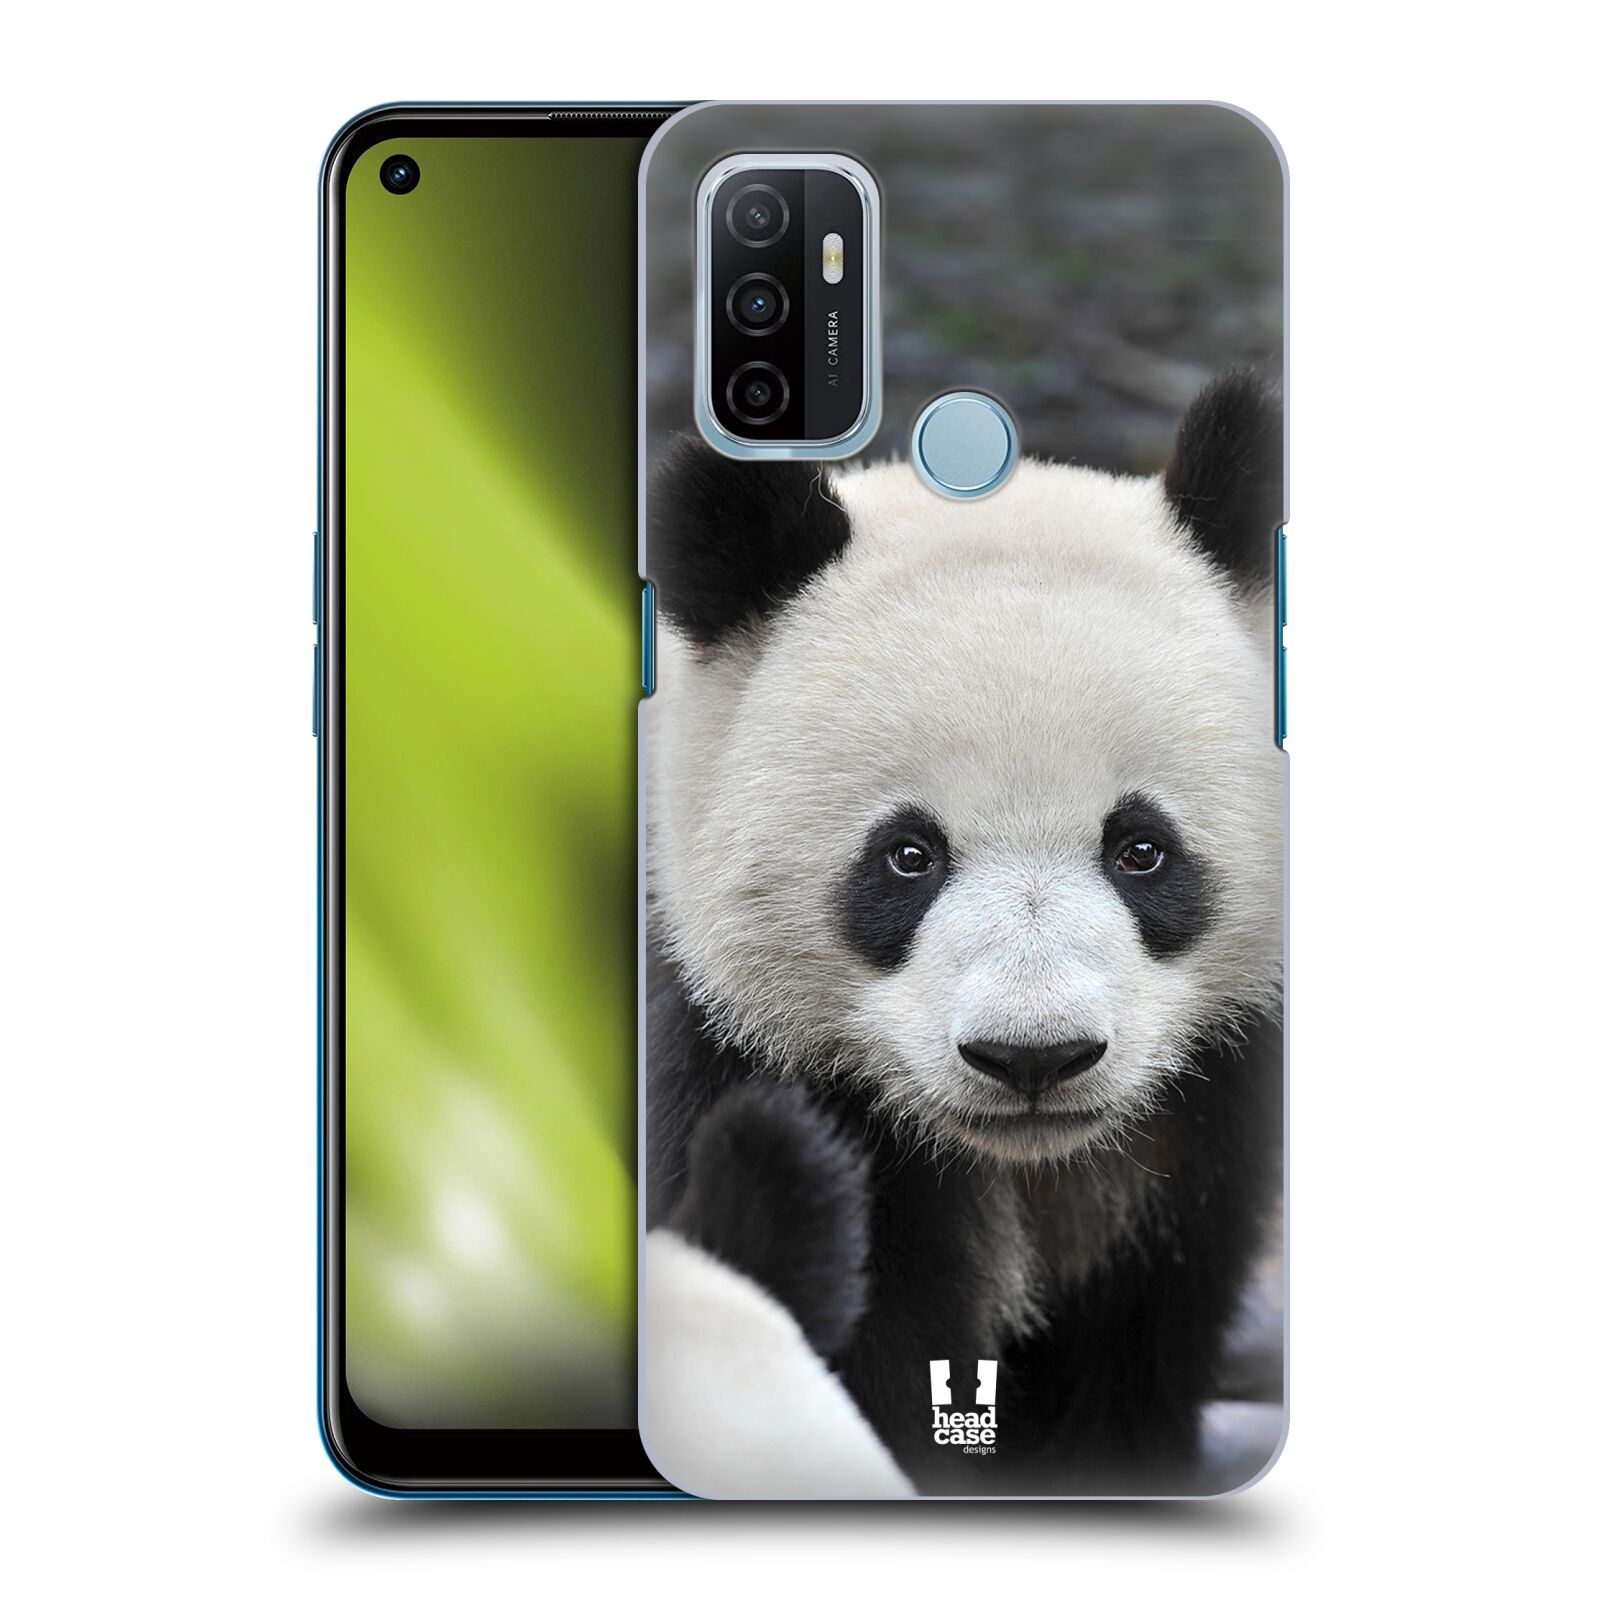 Zadní obal pro mobil Oppo A53 / A53s - HEAD CASE - Svět zvířat medvěd panda